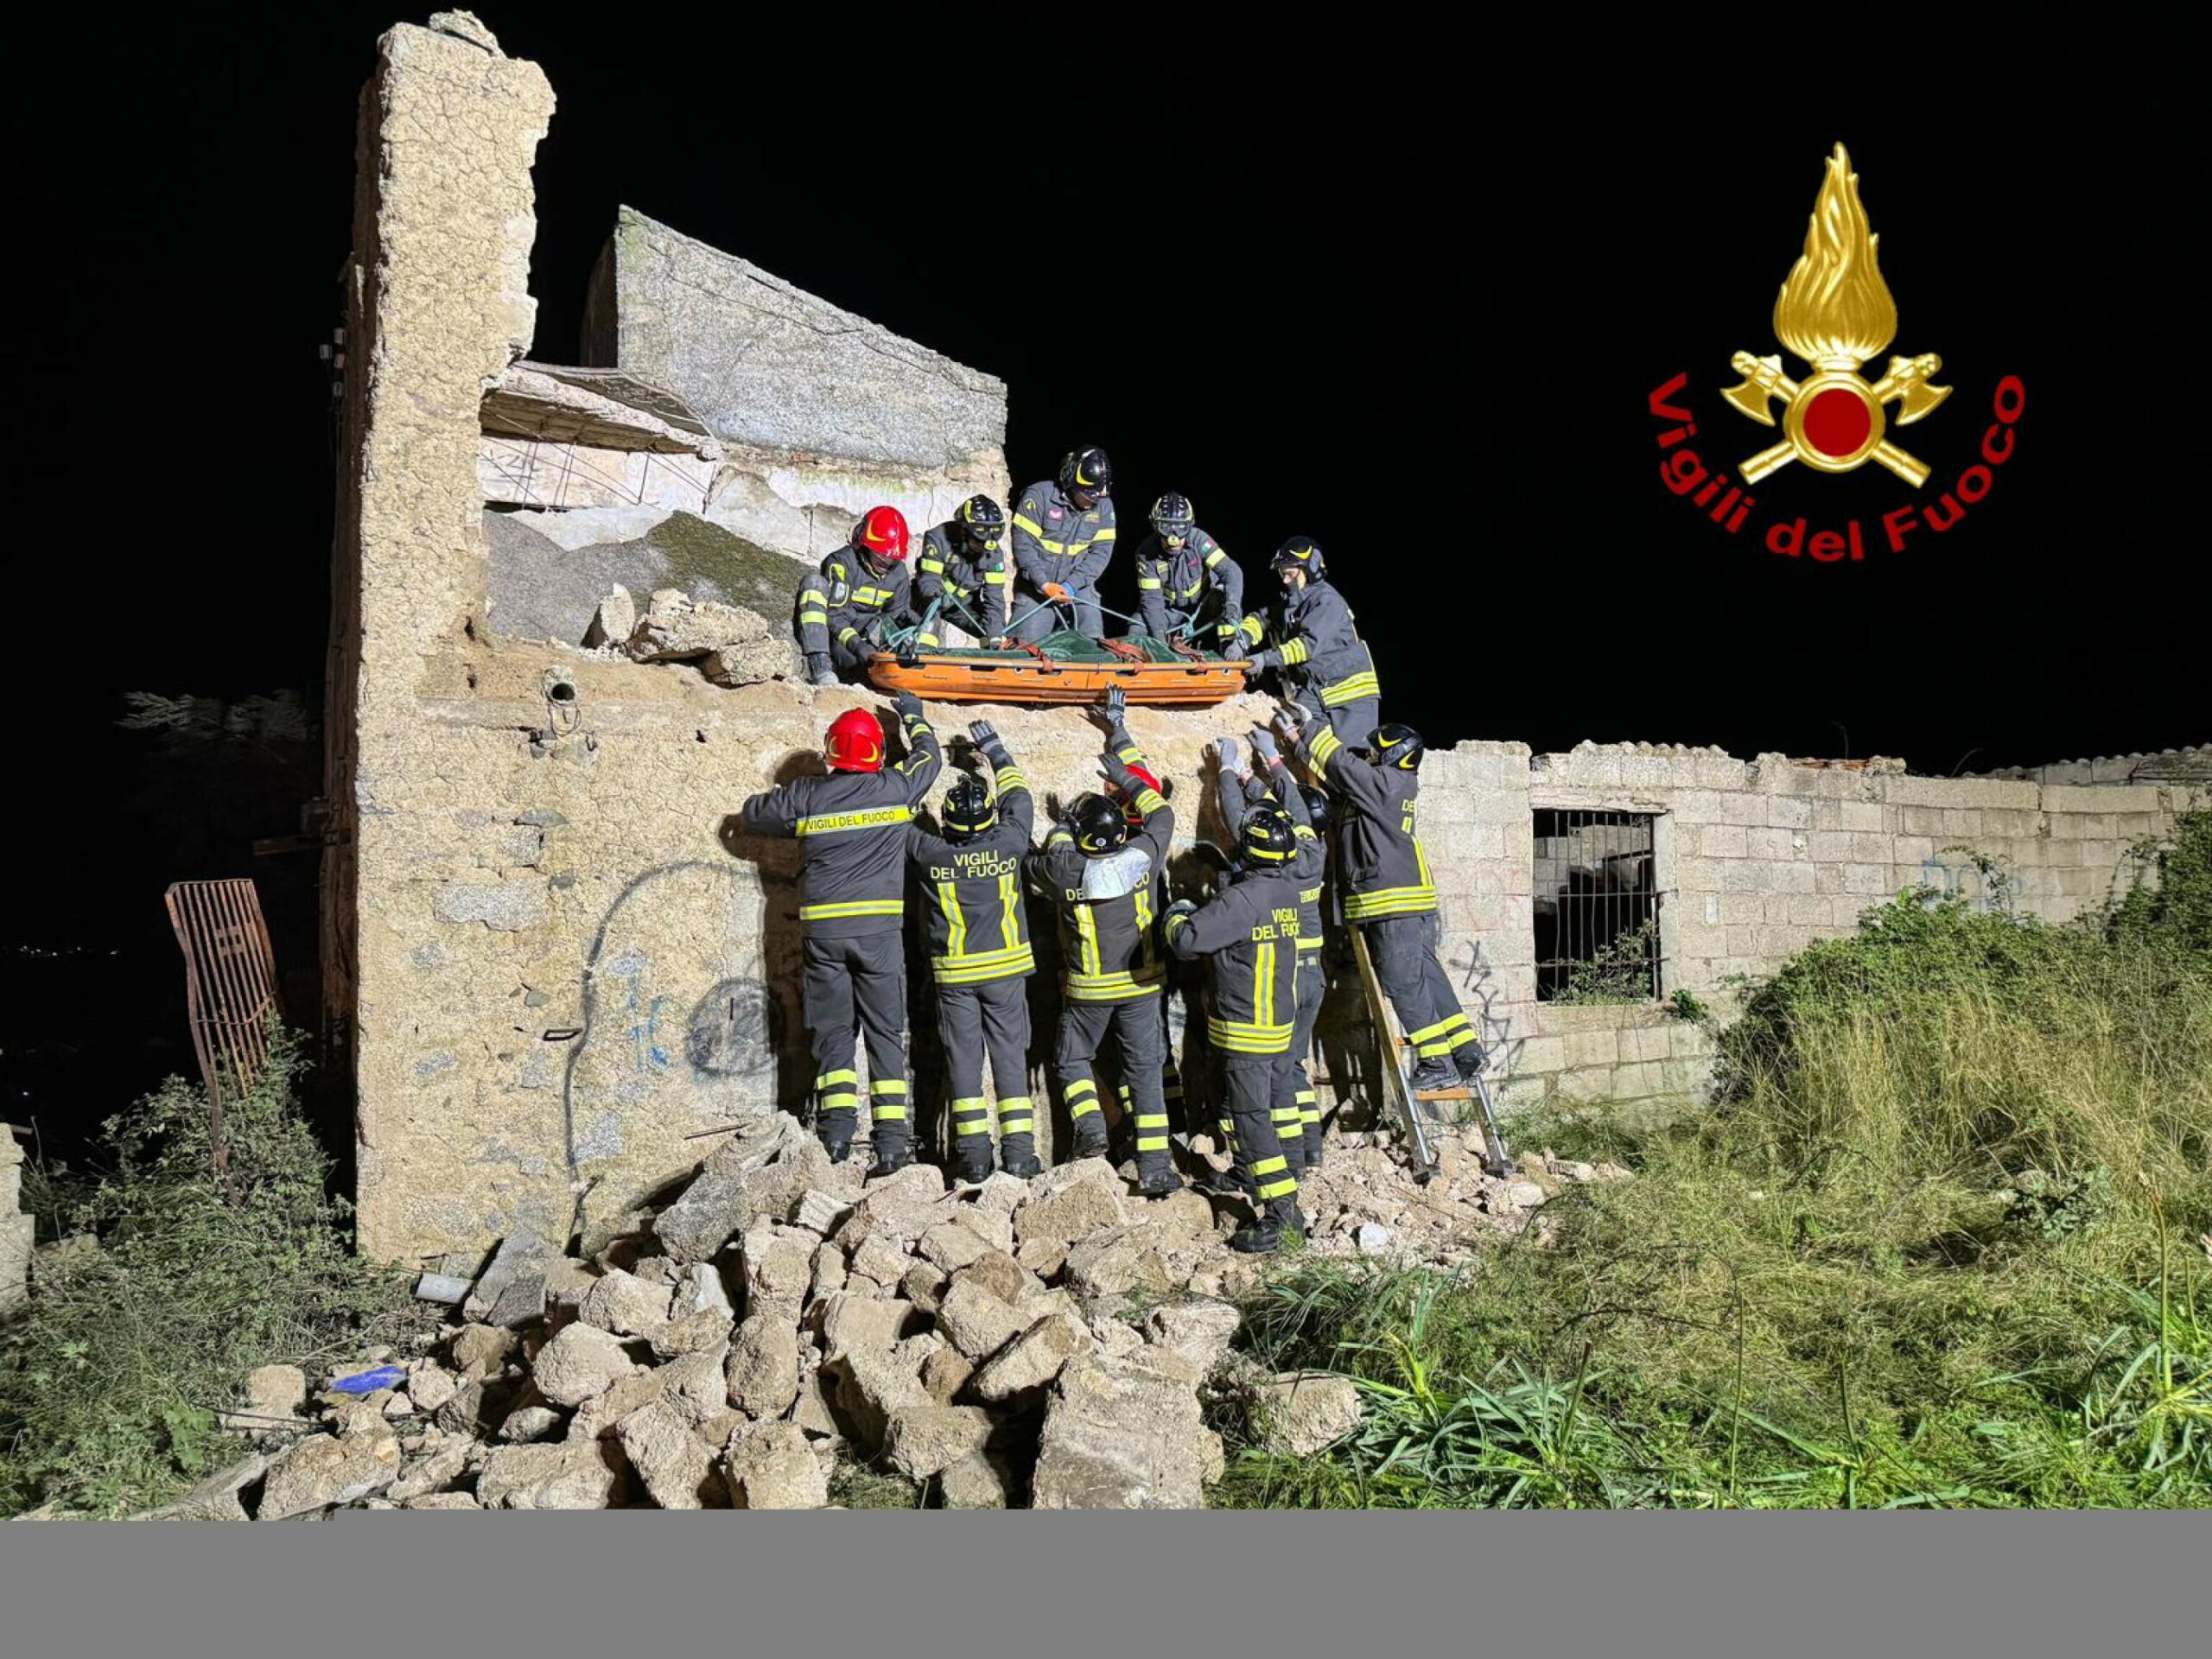  ‣ adn24 nuoro | crolla il tetto di una casa abbandonata, morti 2 bambini che stavano giocando